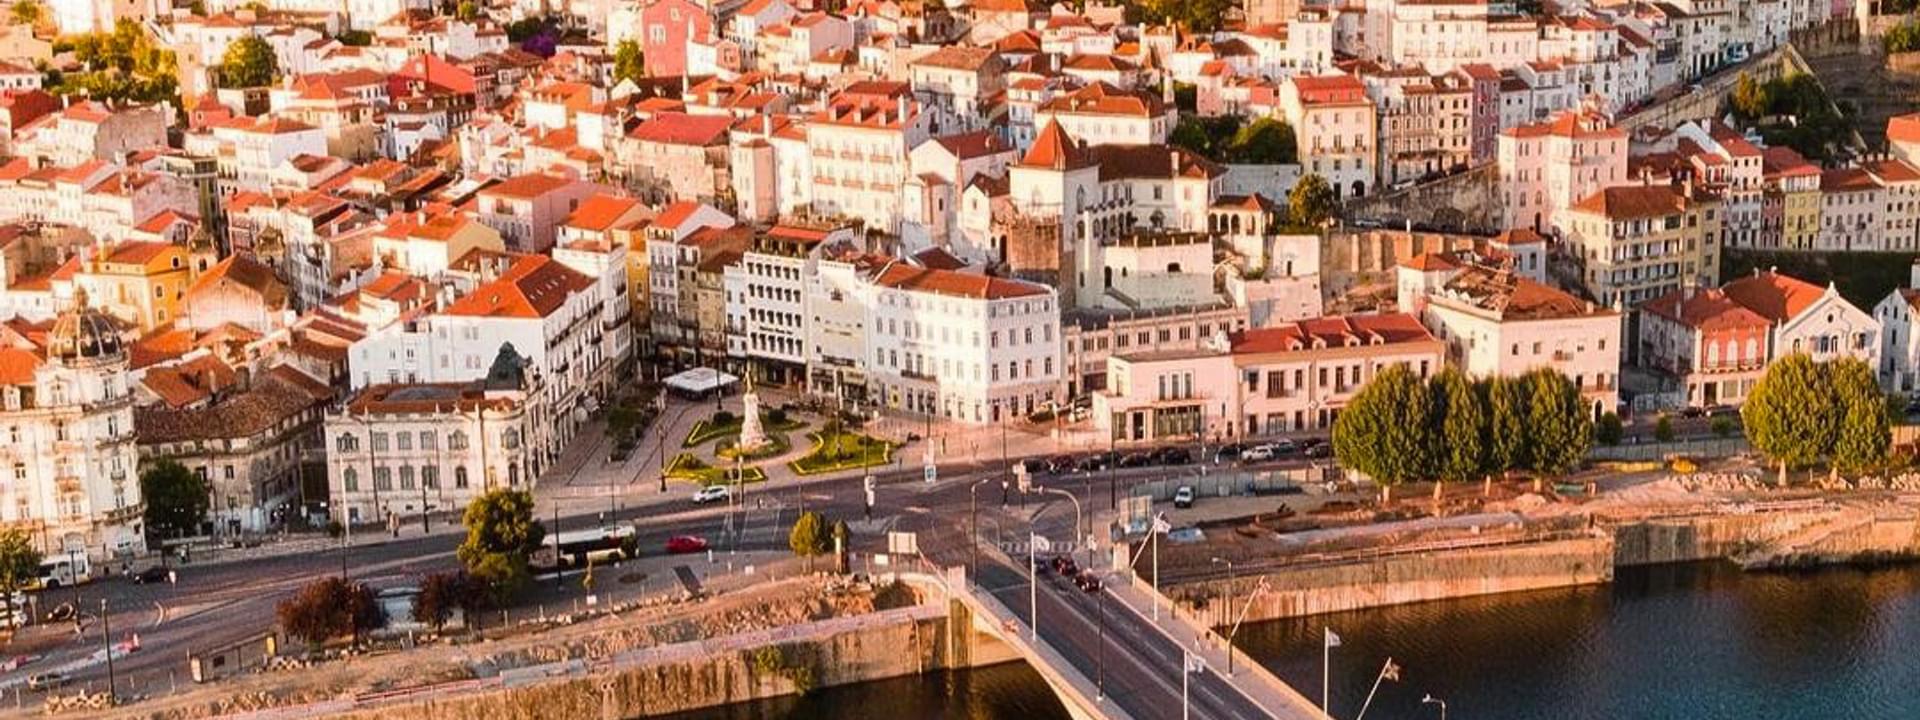 Roteiro a pé por Coimbra: lugares destacados de Coimbra